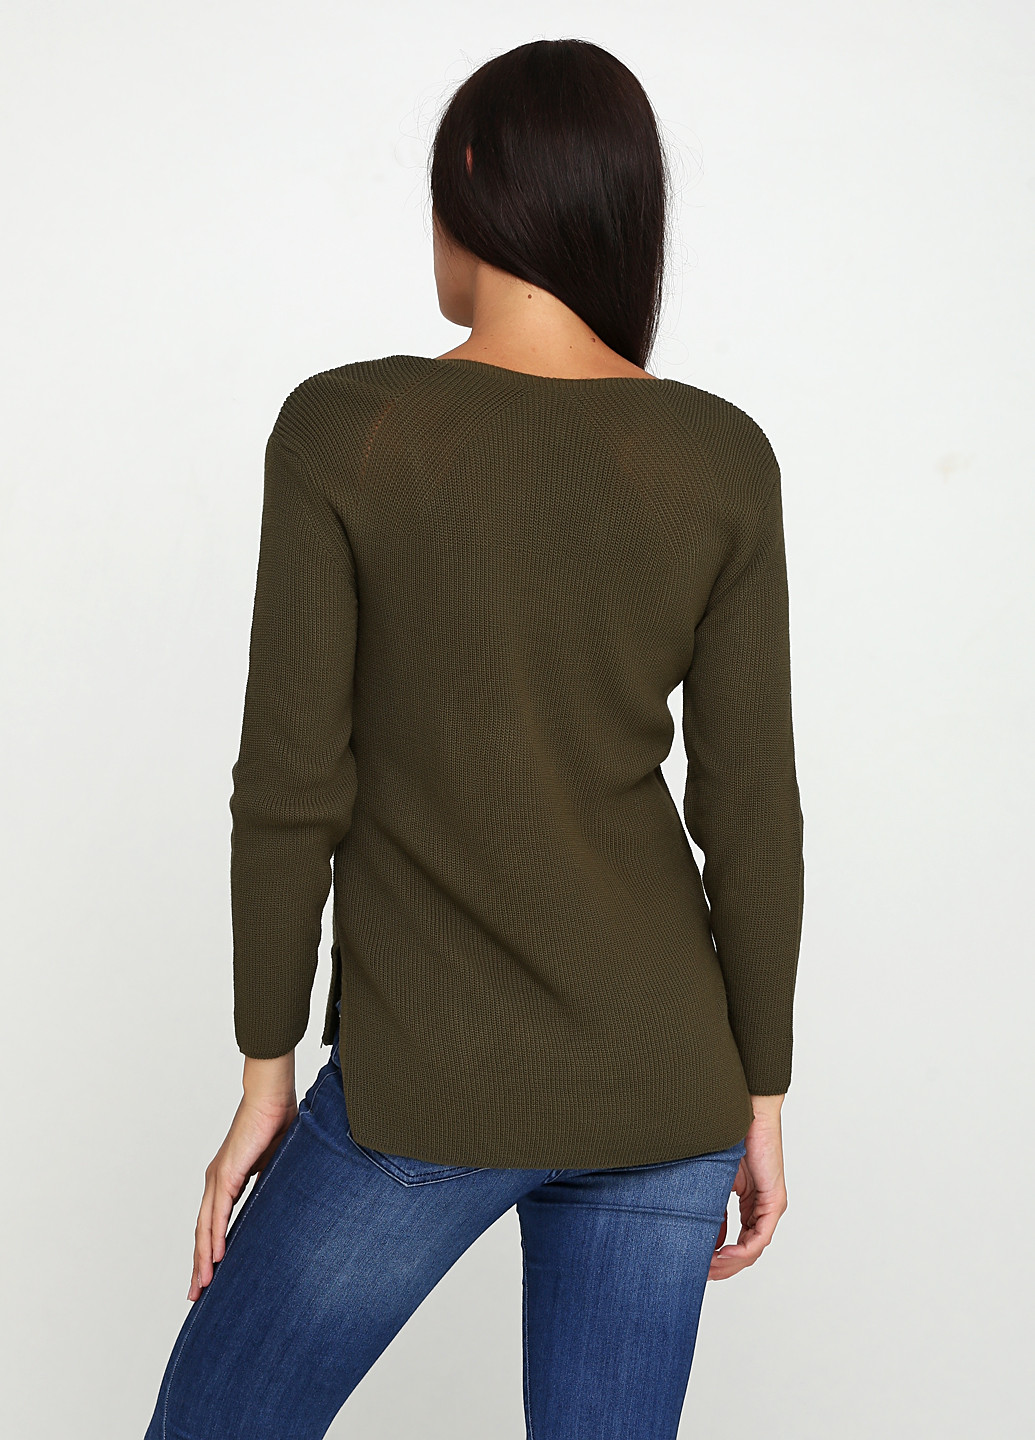 Оливково-зеленый демисезонный пуловер пуловер Imperial